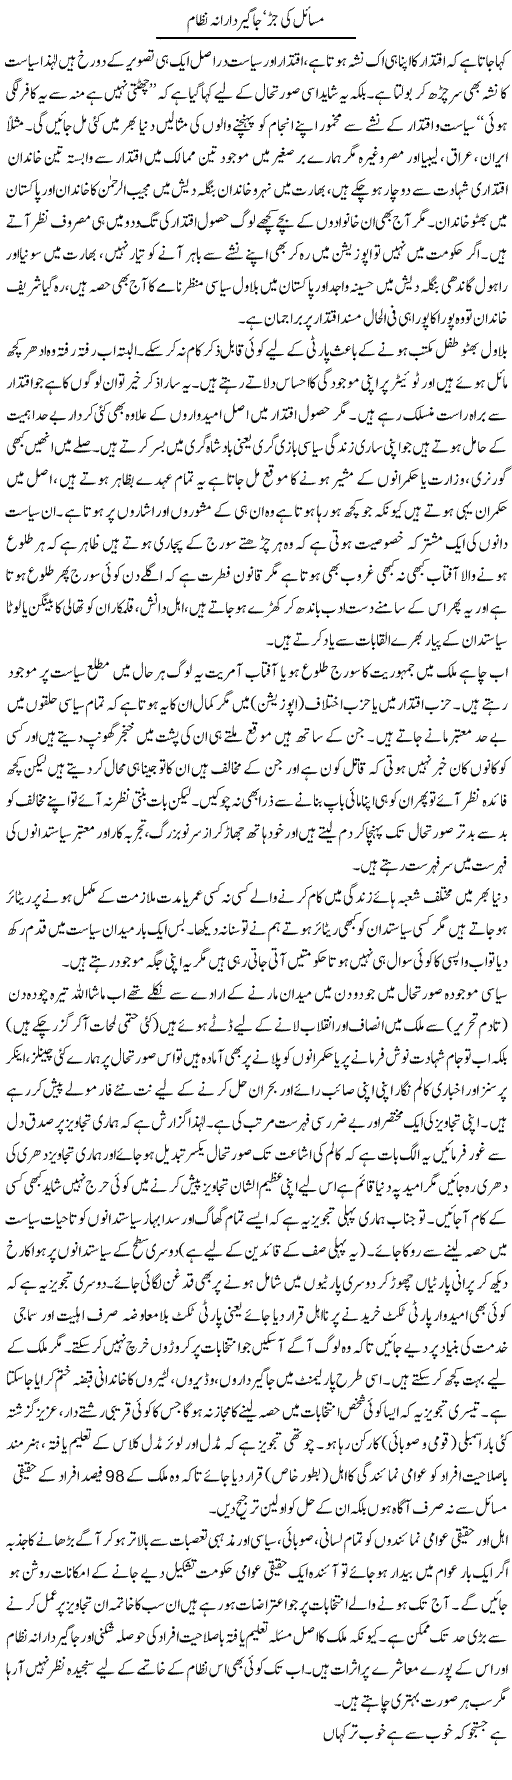 Masail Ki Jar, Jagirdarana Nizam | Najma Alam | Daily Urdu Columns